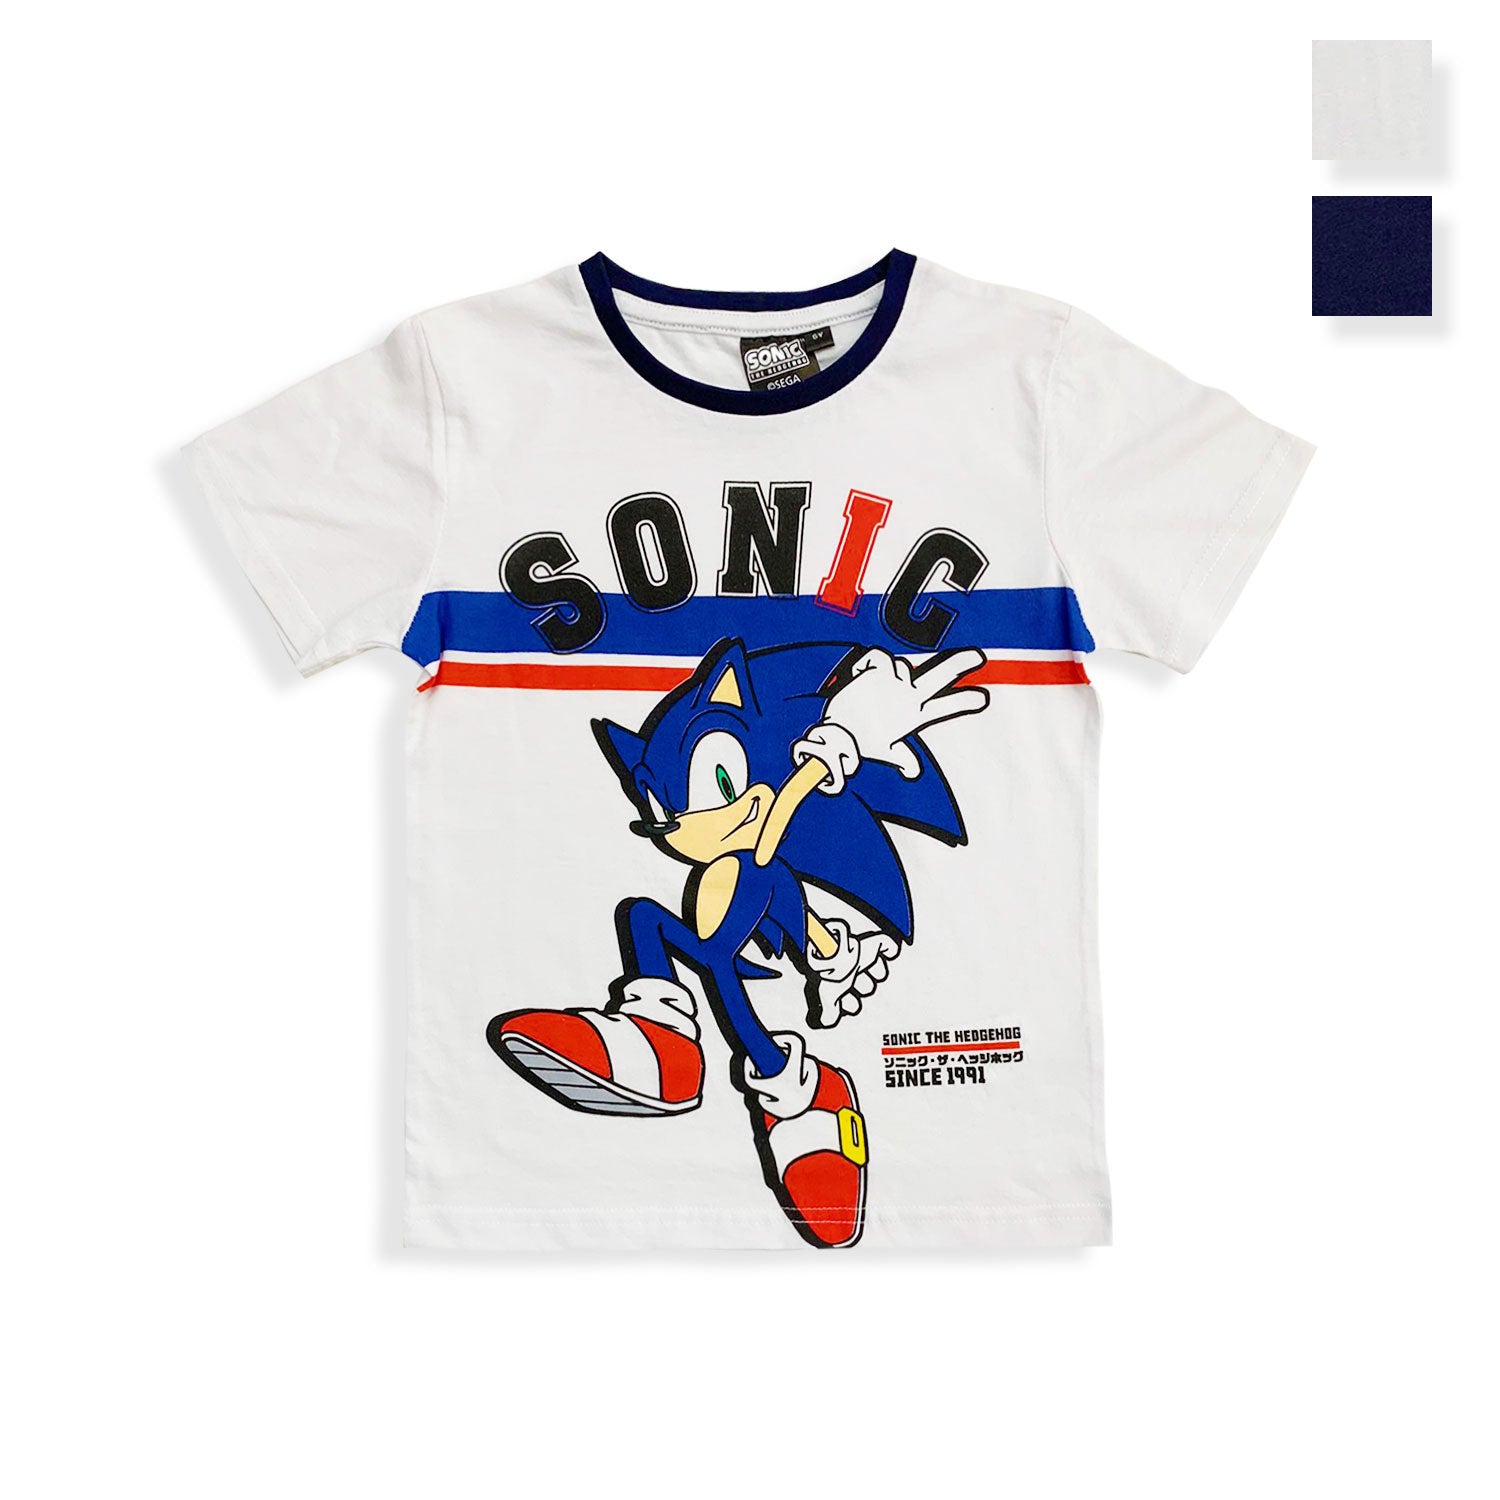 Maglietta Sonic t-shirt bambino maglia mezze maniche in cotone estivo 5451